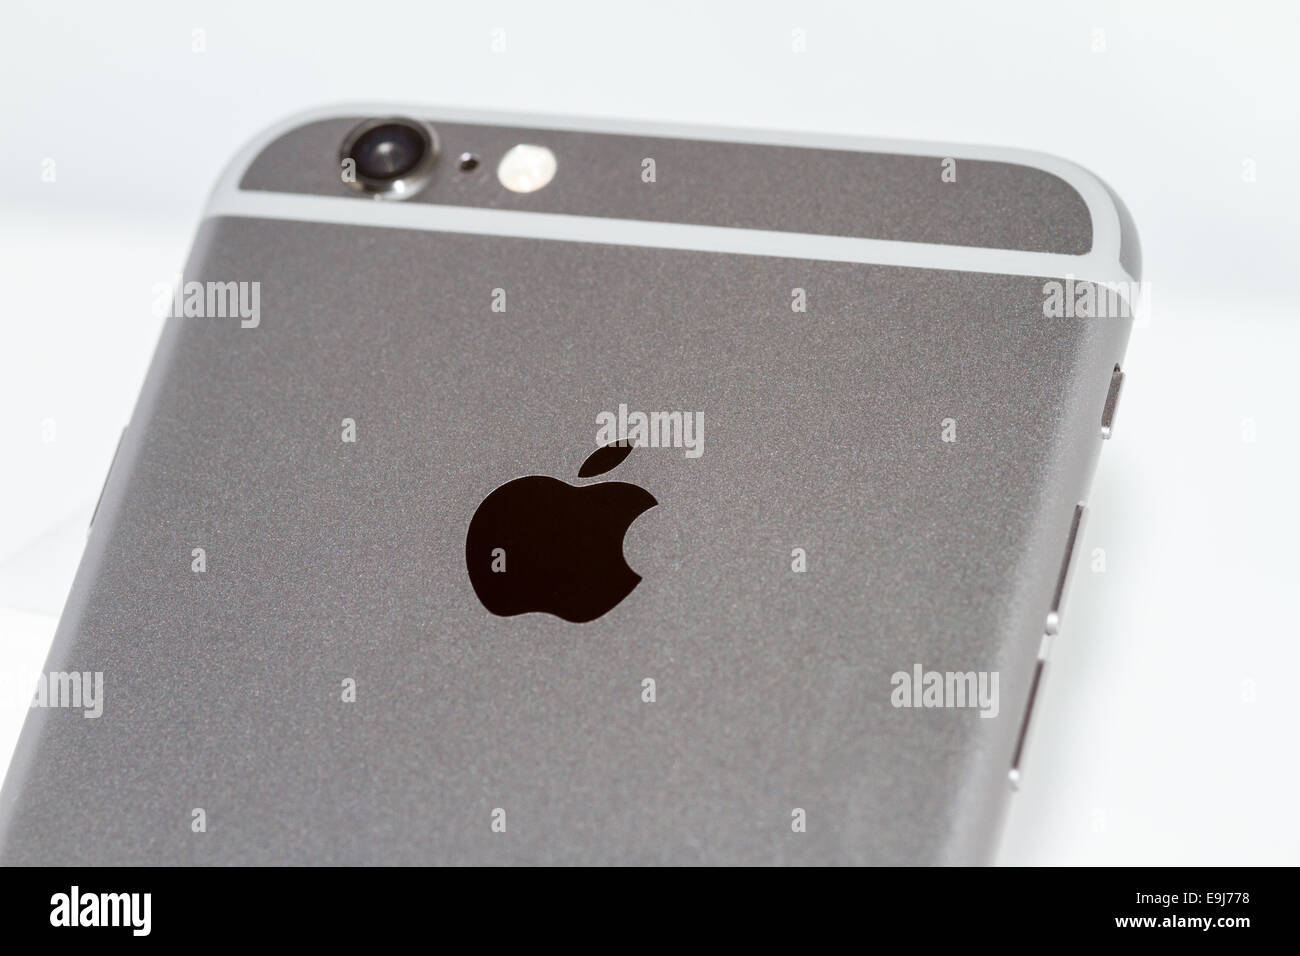 IPhone 6 logo arrière avec objectif de l'appareil photo visible Banque D'Images